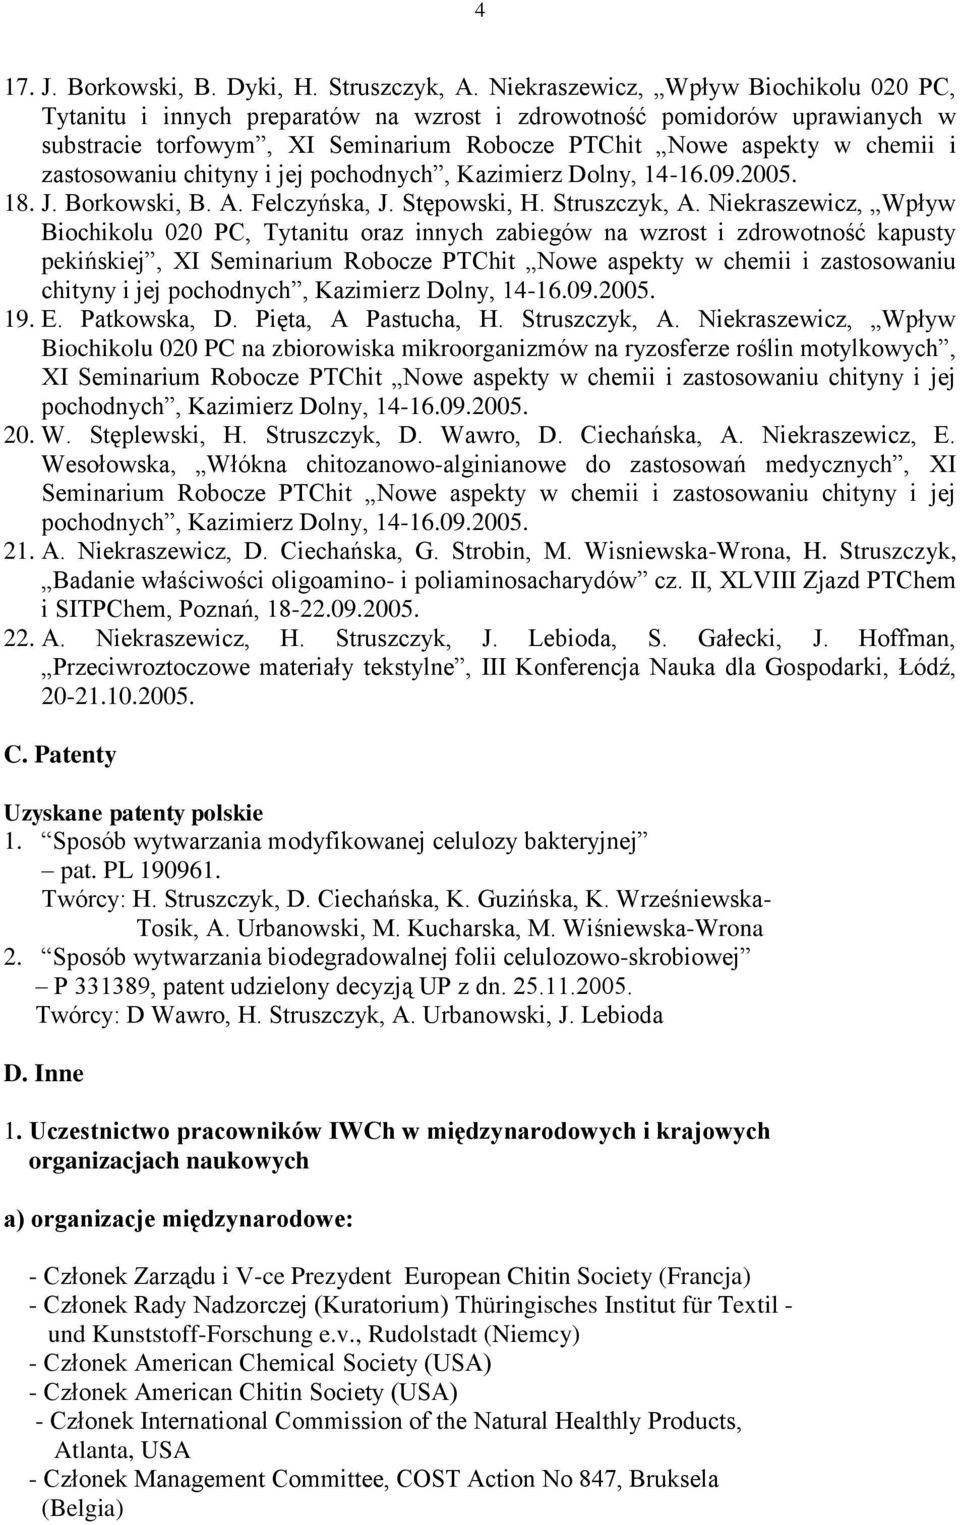 zastosowaniu chityny i jej pochodnych, Kazimierz Dolny, 14-16.09.2005. 18. J. Borkowski, B. A. Felczyńska, J. Stępowski, H. Struszczyk, A.